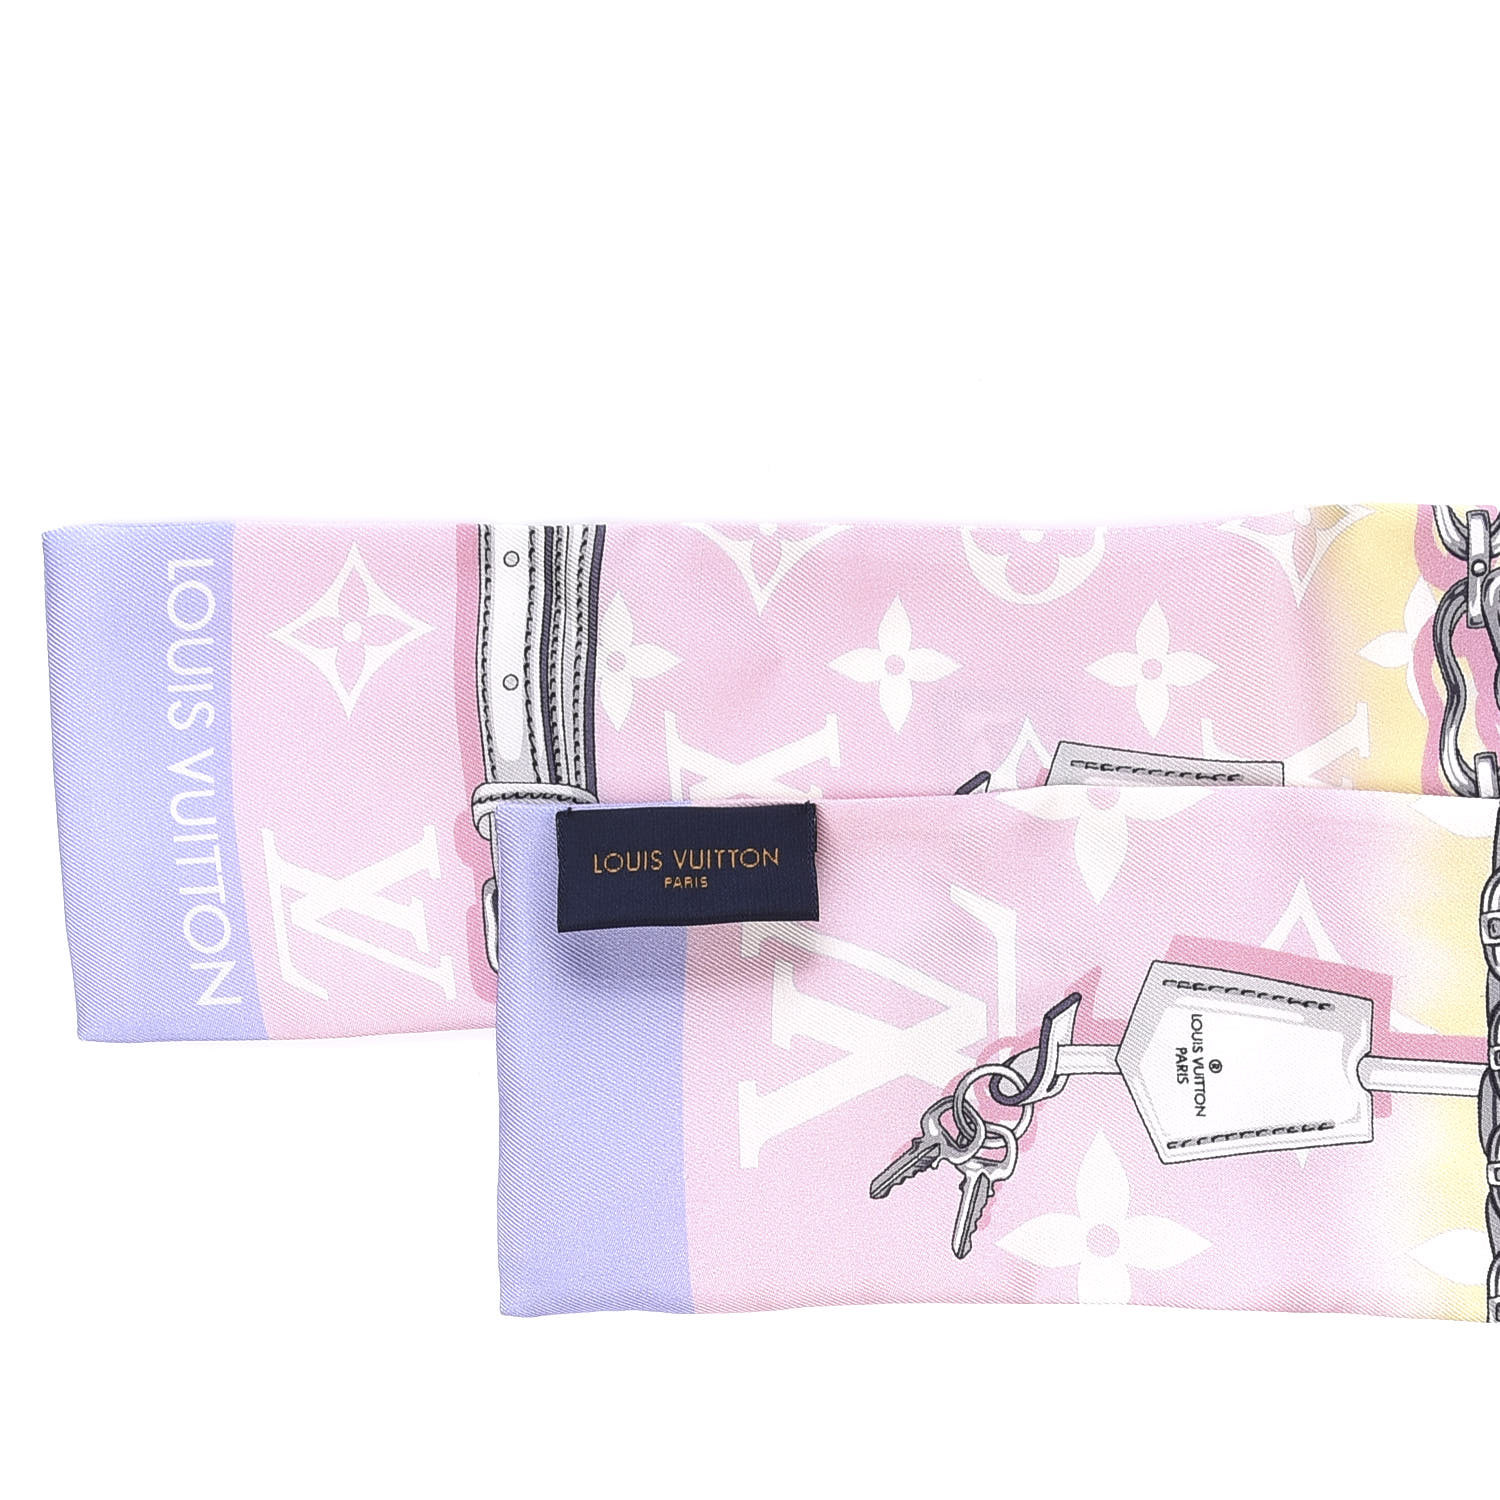 Louis Vuitton  Pink Confidential Bandeau Escale Limited Edition